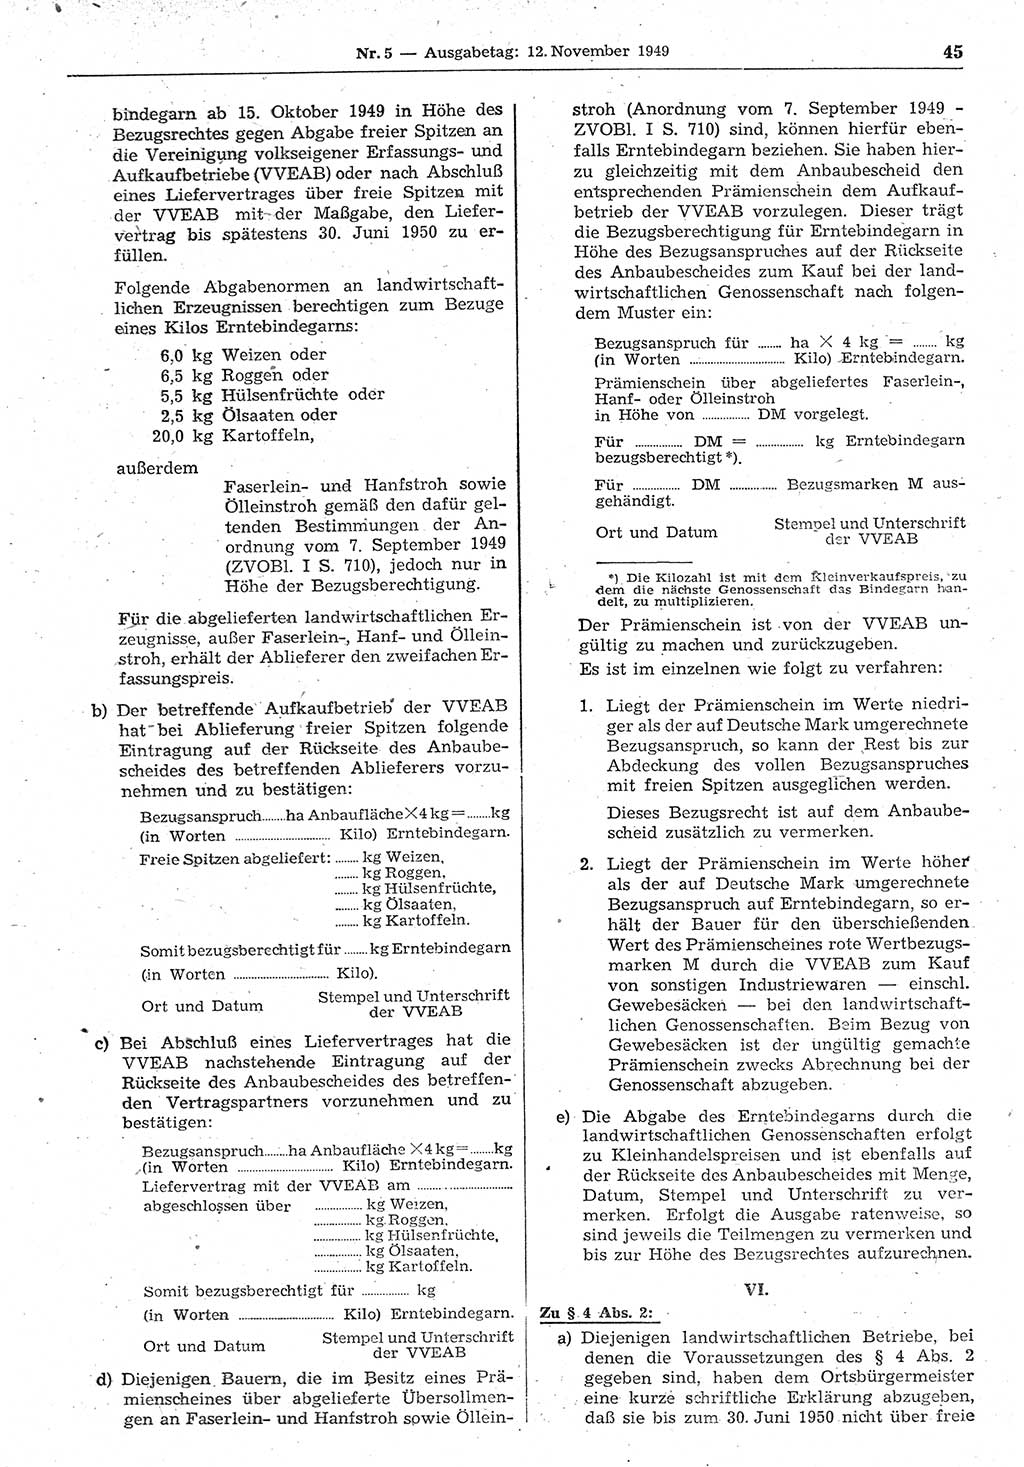 Gesetzblatt (GBl.) der Deutschen Demokratischen Republik (DDR) 1949, Seite 45 (GBl. DDR 1949, S. 45)